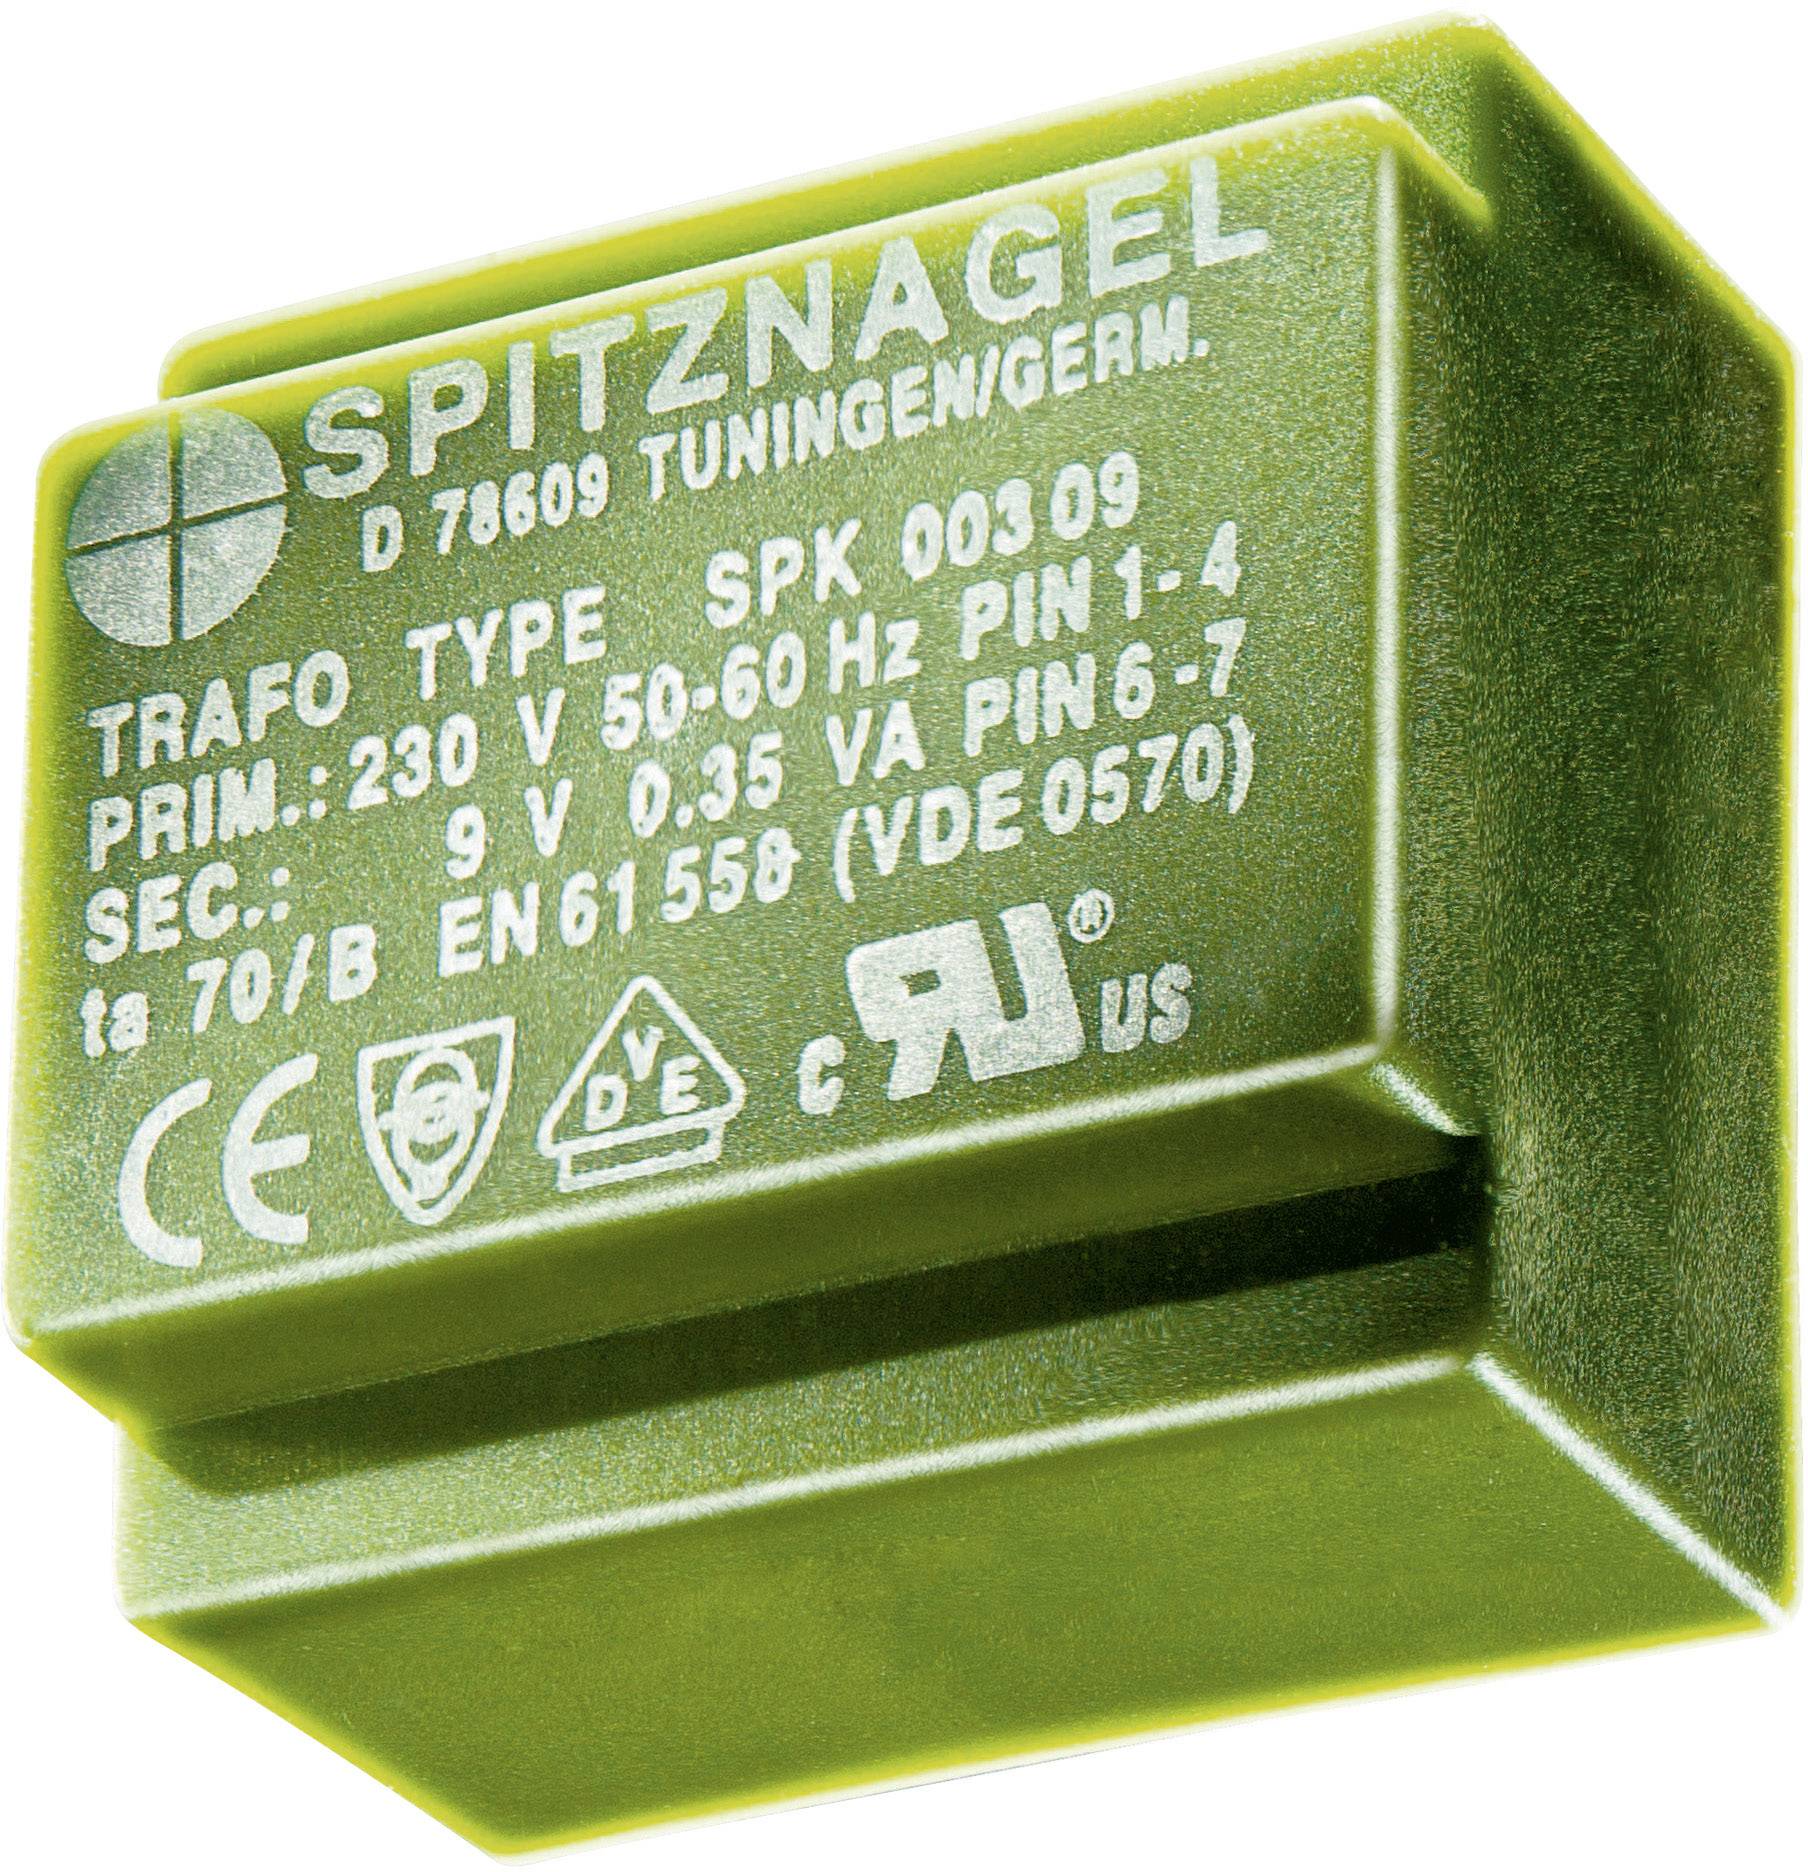 Трансформатор 230в. Трансформатор PCB, 1 X 230 В. Spitznagel трансформатор d78609. Spitznagel spk00304. PCB Transformer.